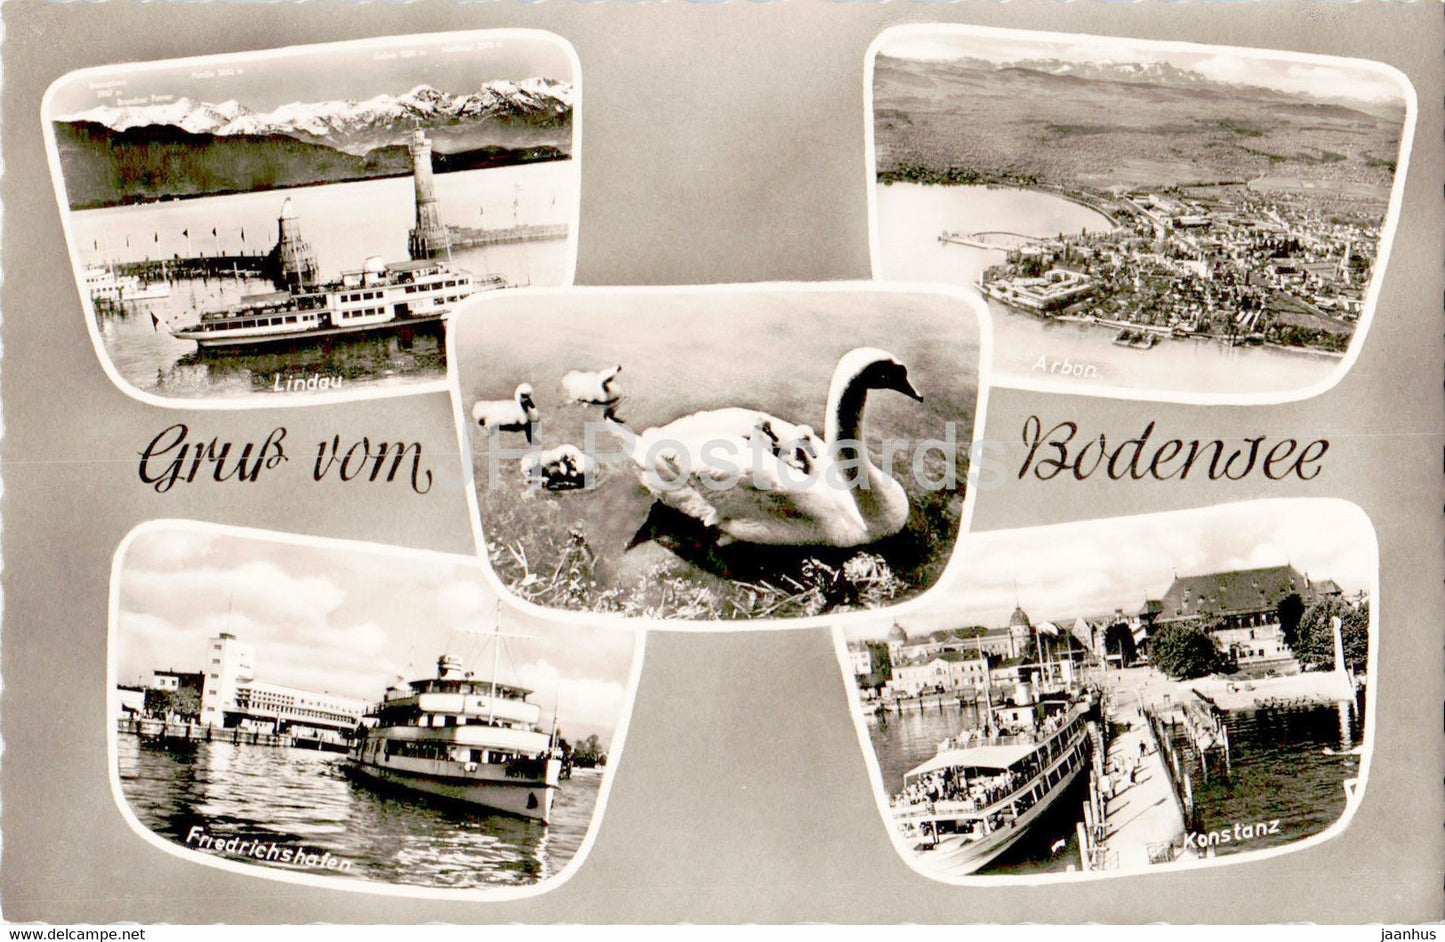 Gruss vom Bodensee - Lindau - Arbon - Friedrichshafen - Konstanz - ship - swan - birds - old postcard - Germany - unused - JH Postcards